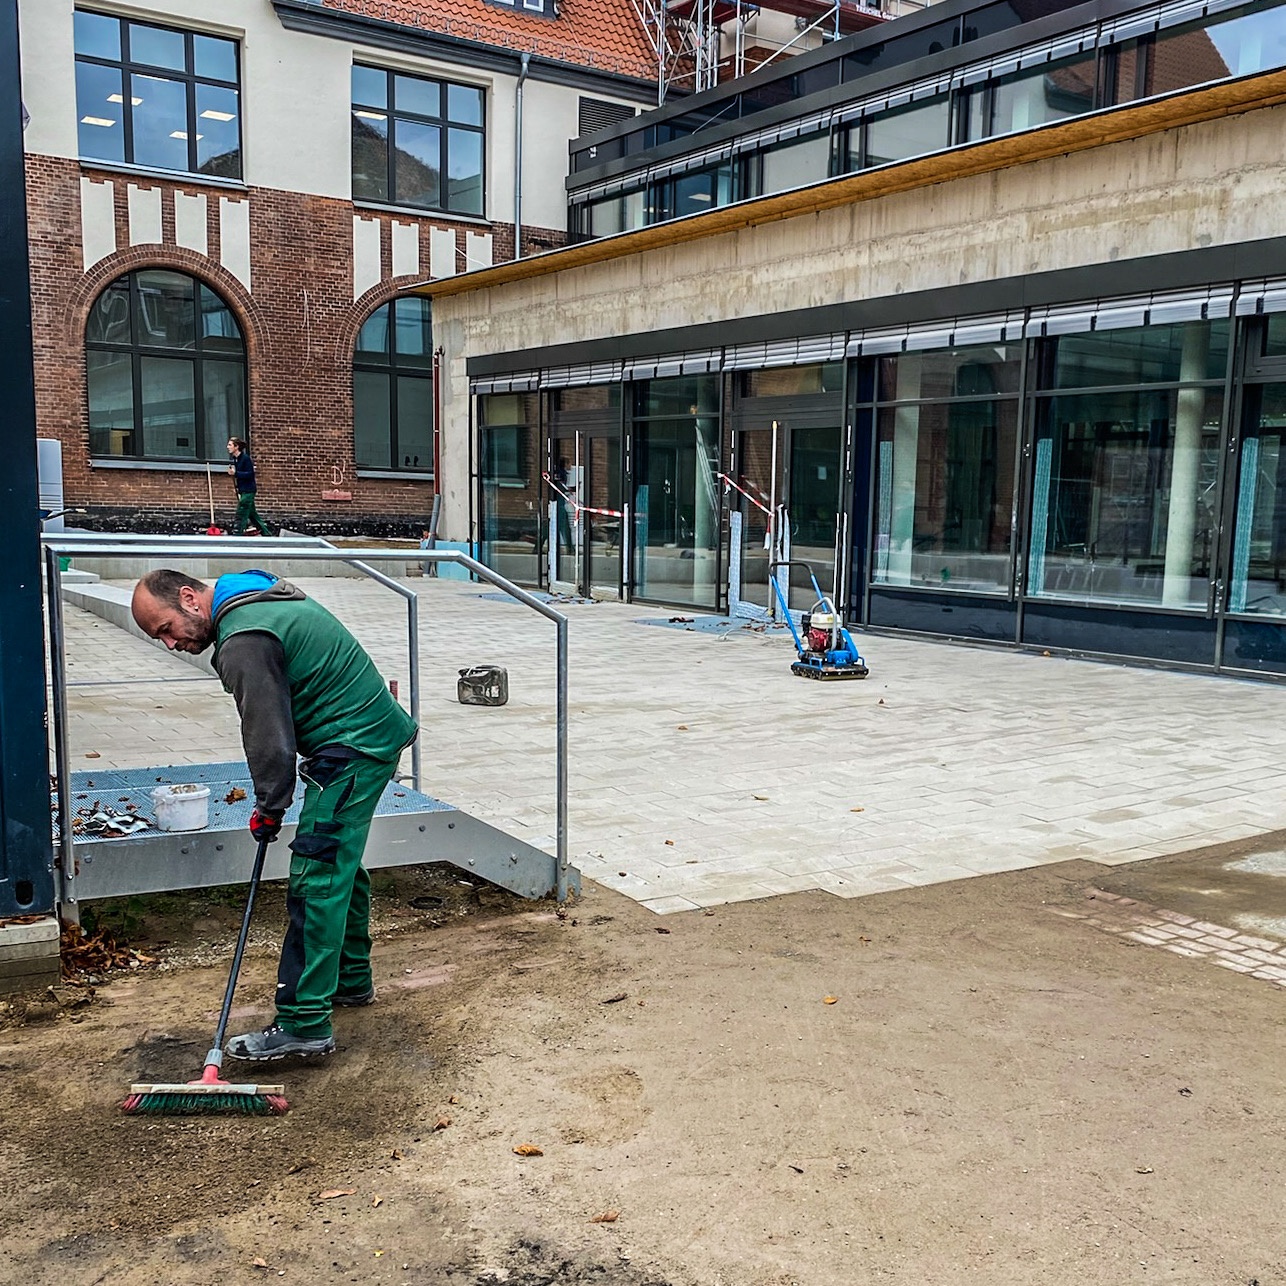 Dieses Bild zeigt die Firma Drewes Landschaftsbau GmbH bei Landschaftsbauarbeiten an der Grundschule Kastanienweg in Hannover 